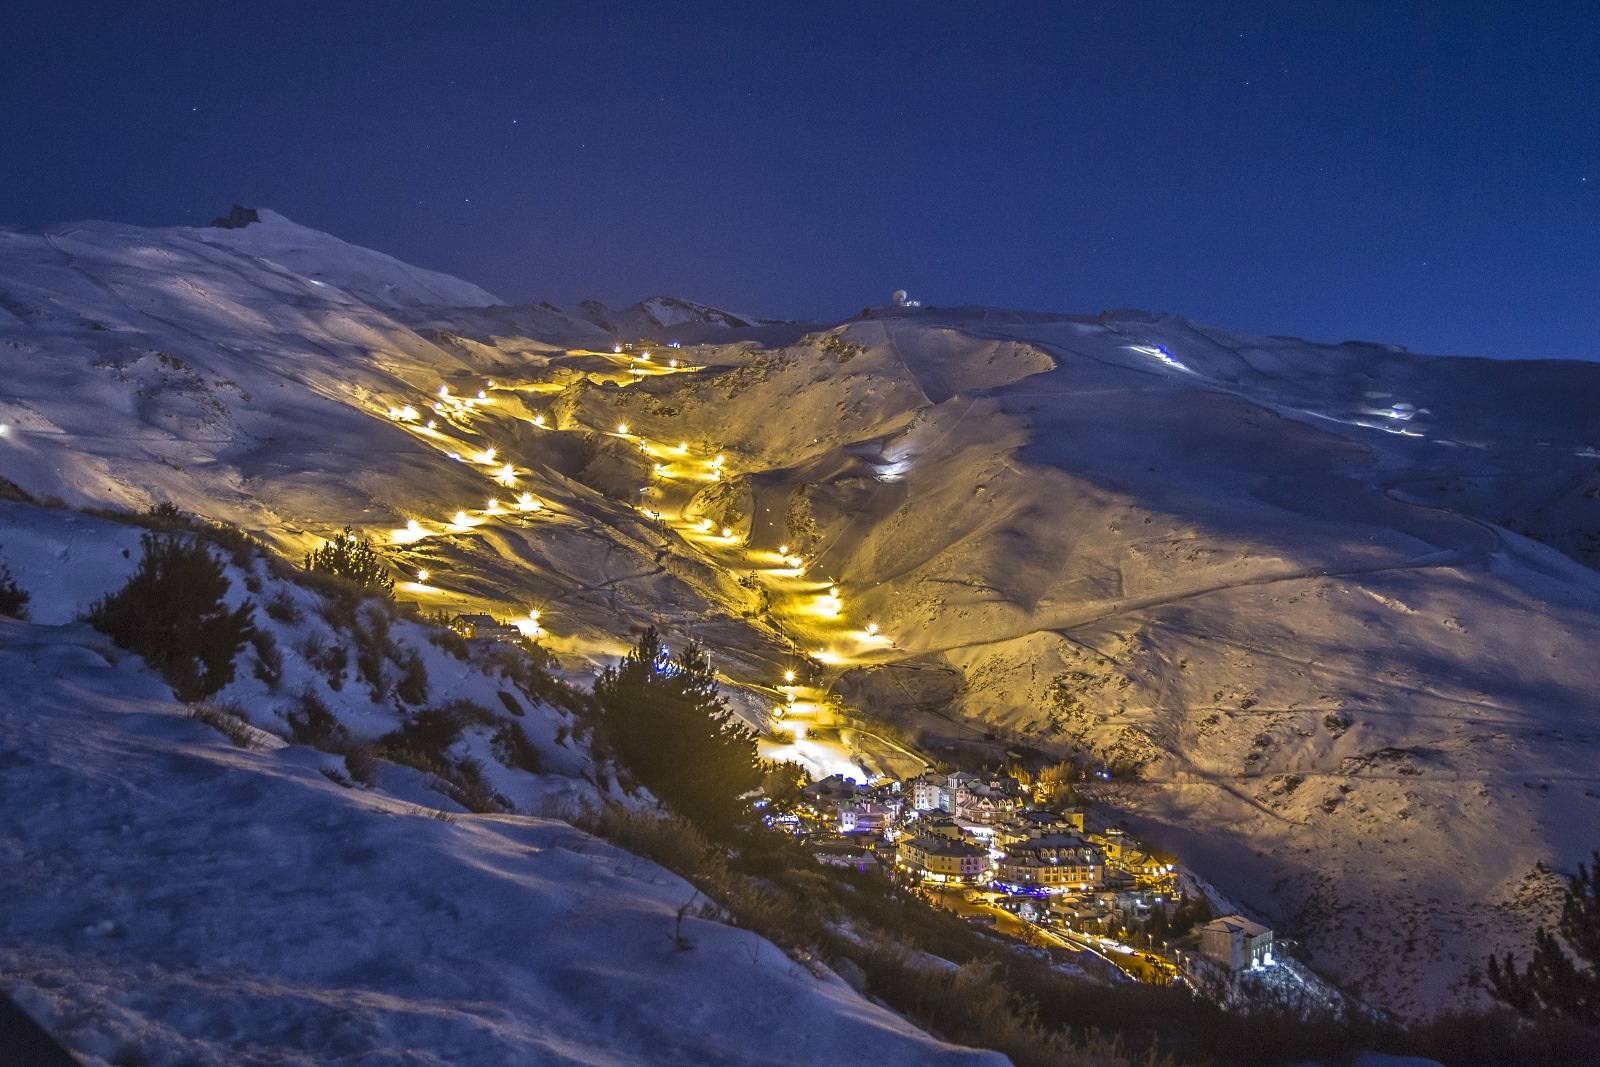 Sierra Nevada inaugura el esquí nocturno y abre la zona de Loma del Dilar para el Puente